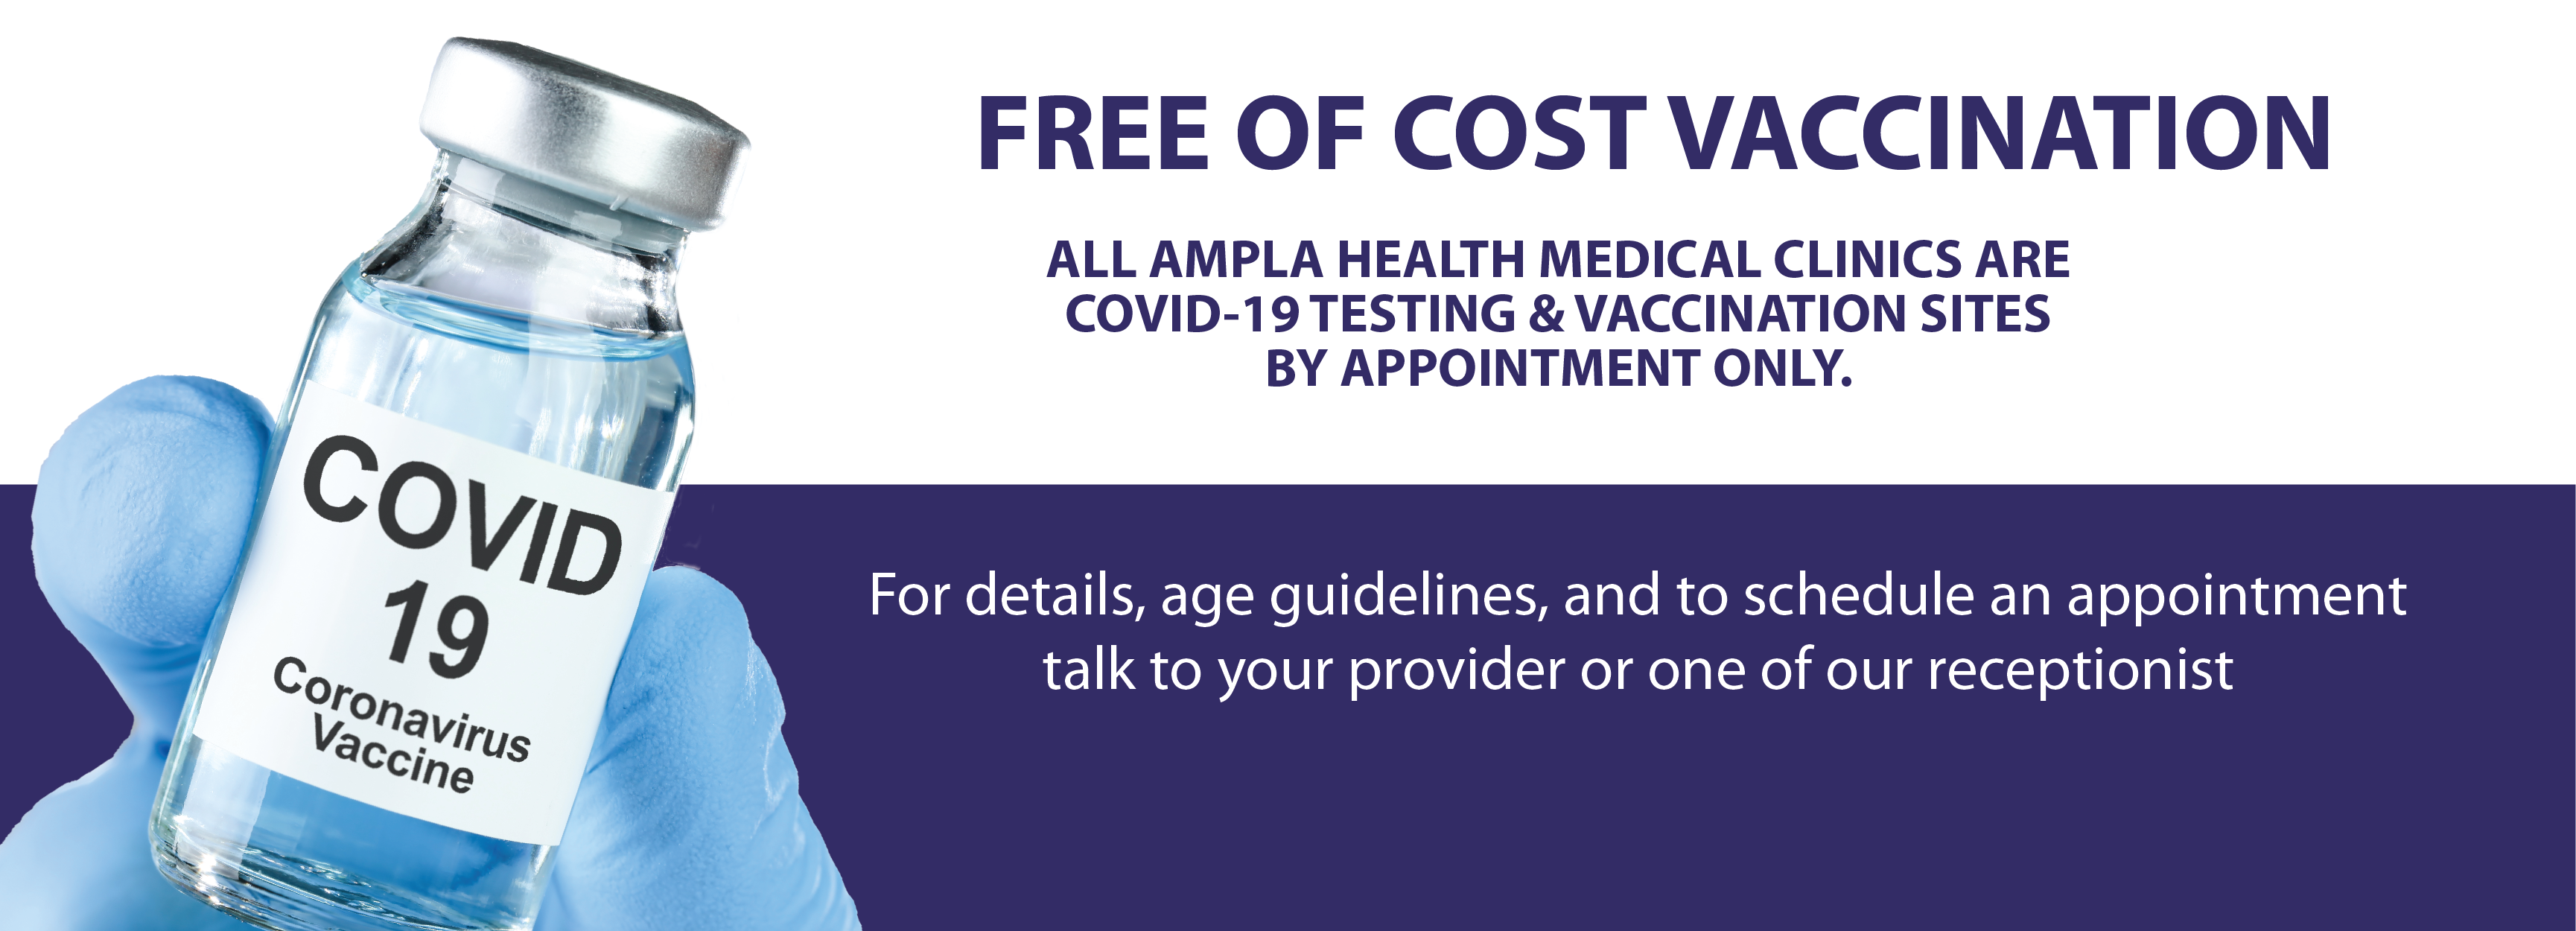 Covid Vaccination - FREE